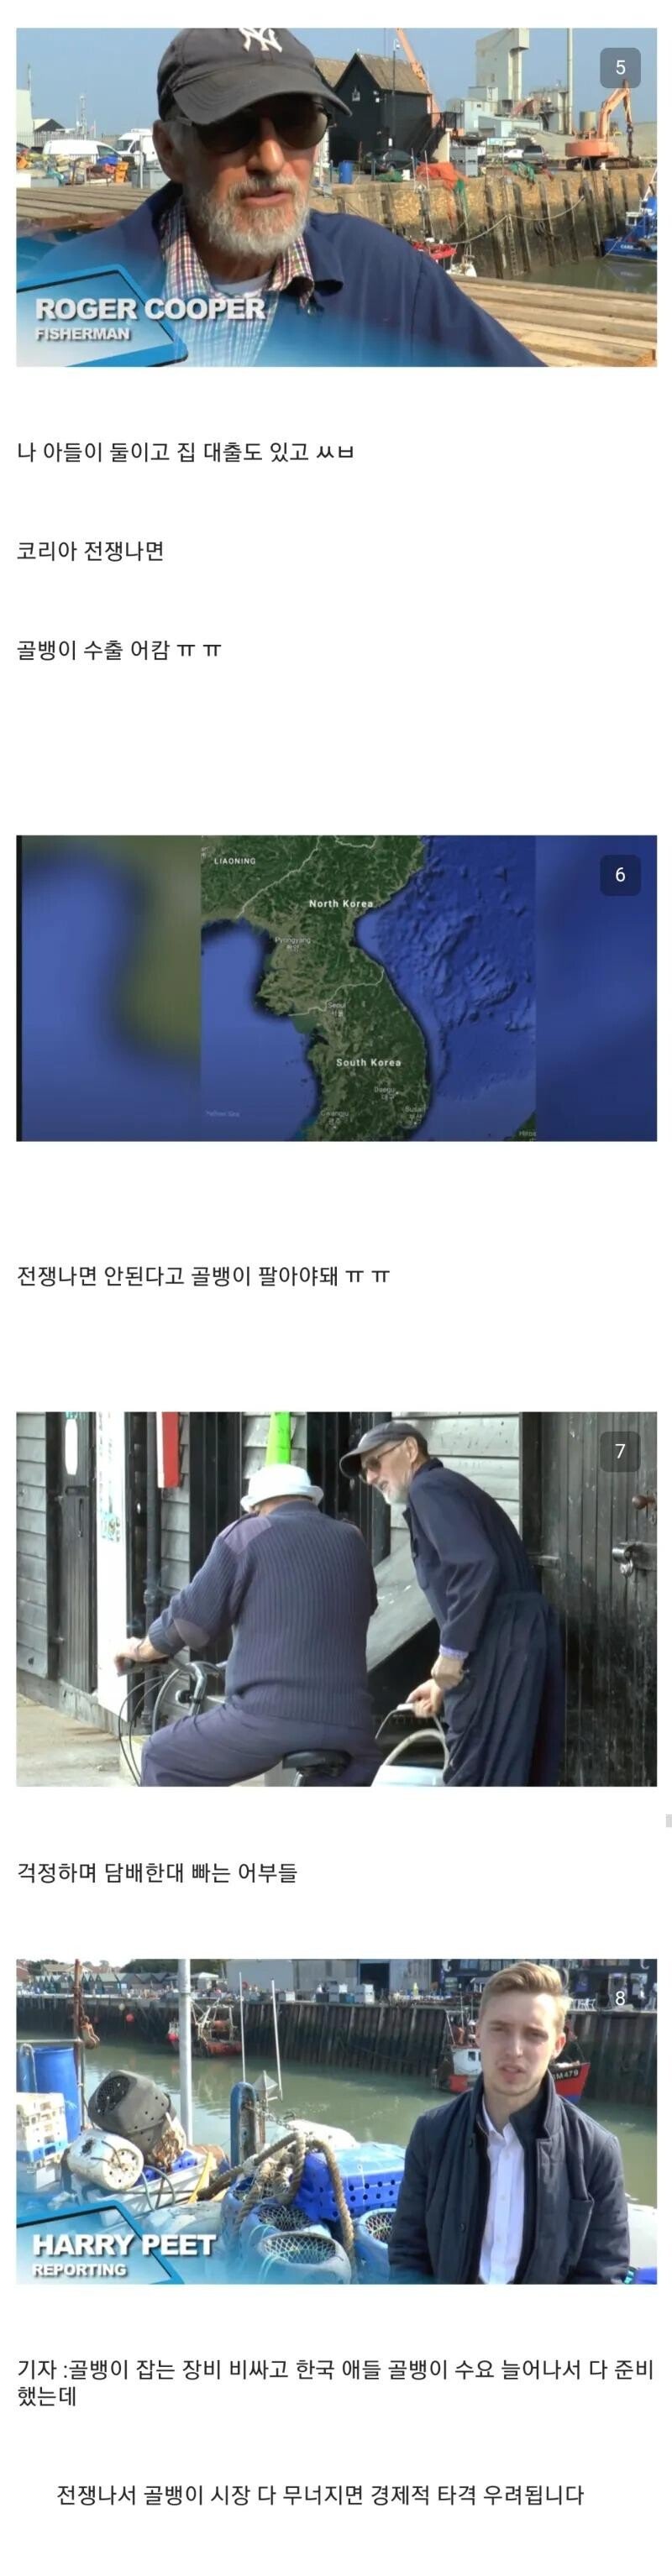 전세계 모든 지역중에 가장 한국을 걱정하는 곳